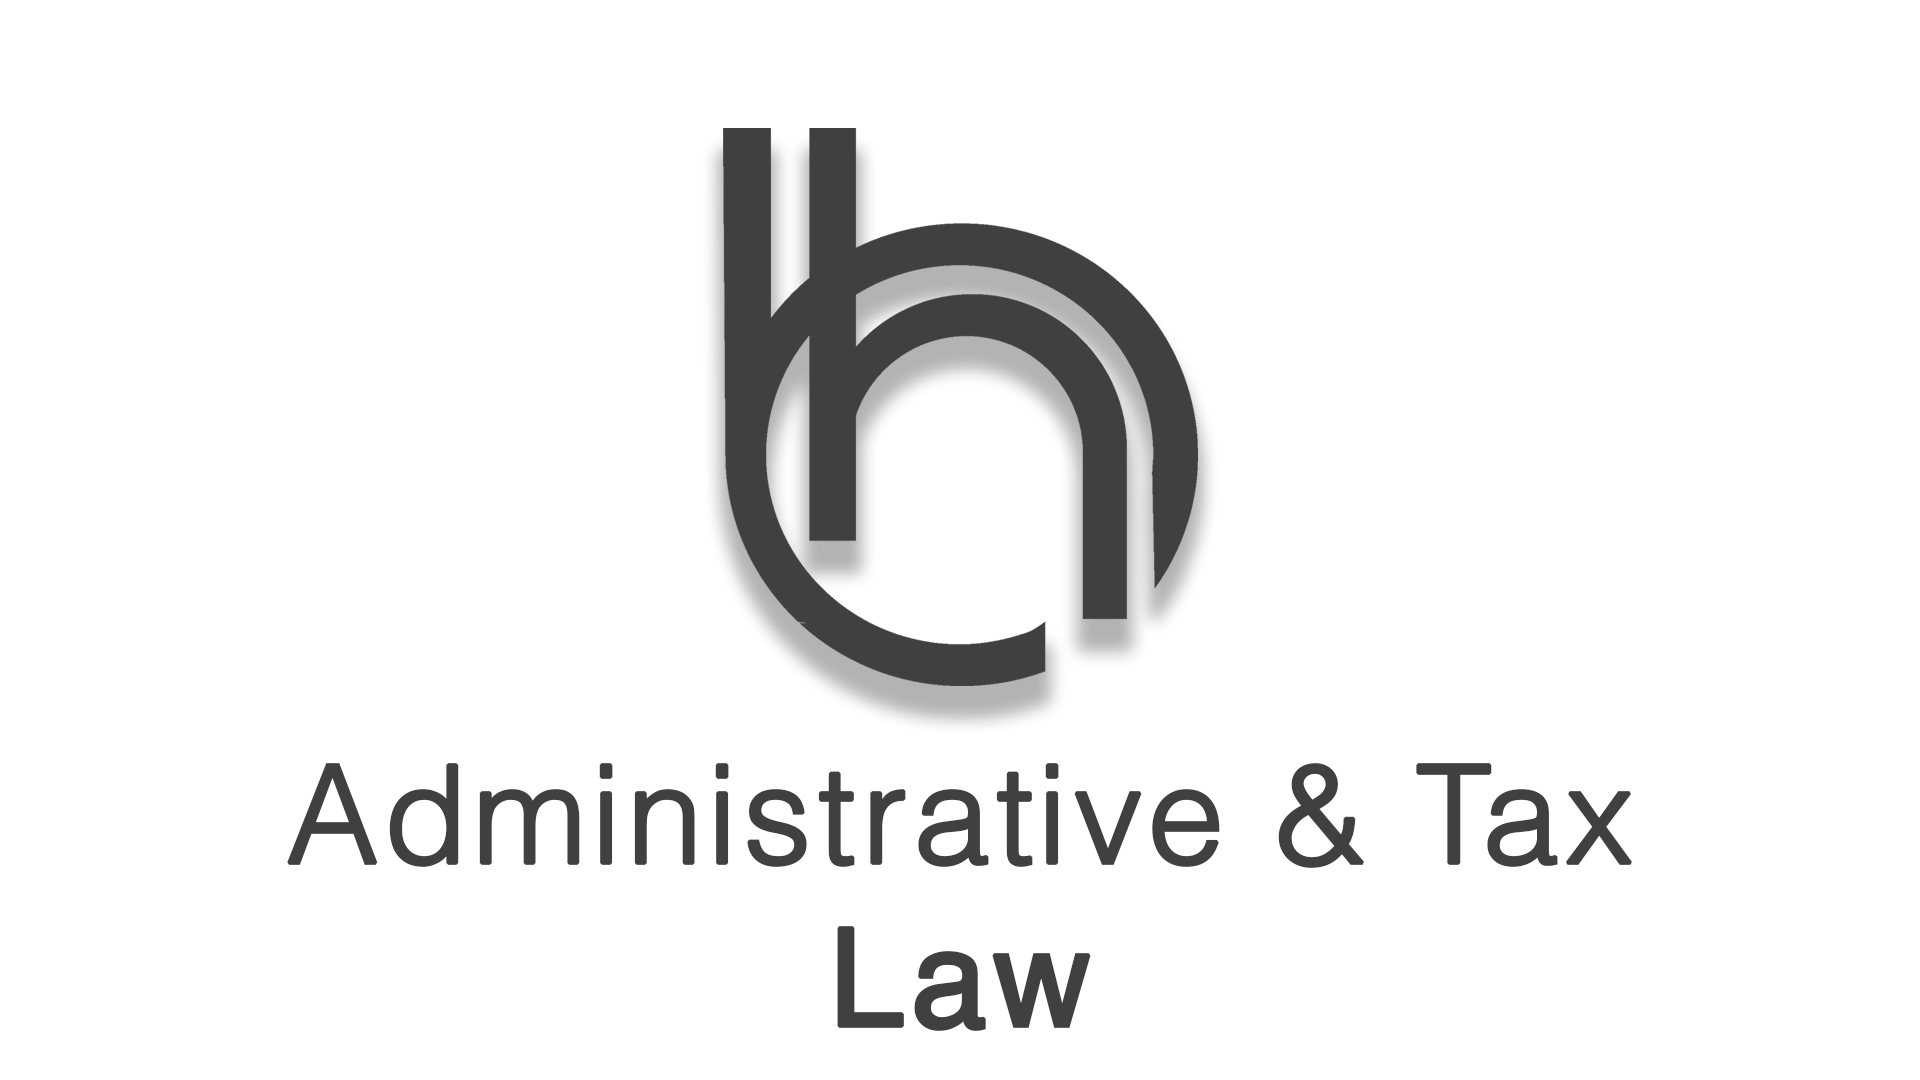 Administrative & Tax Law